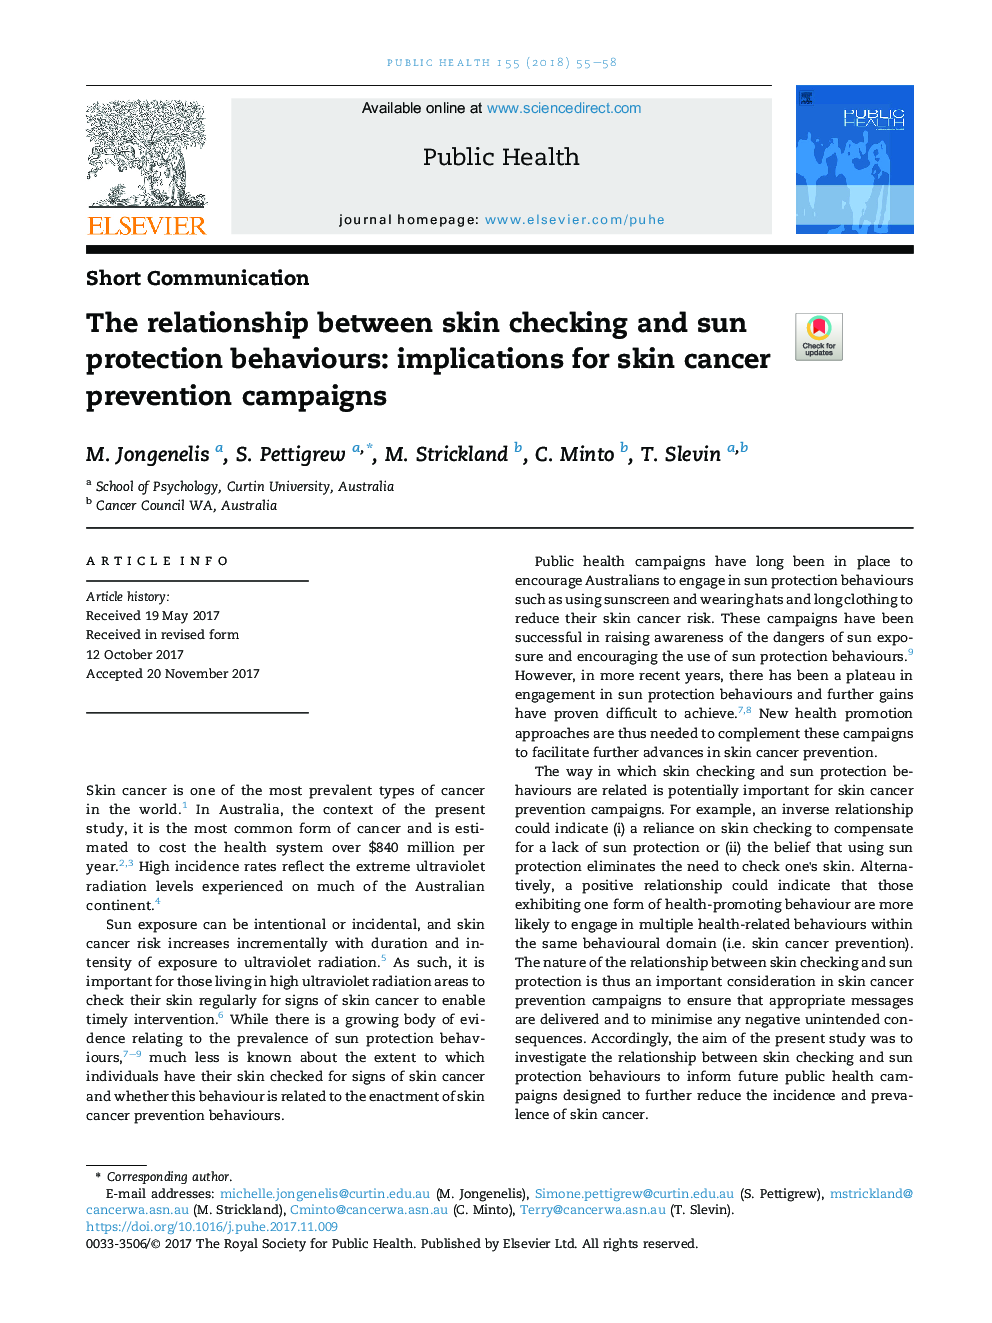 ارتباط بین بررسی پوست و رفتارهای حفاظت از خورشید: پیامدهای پیشگیری از ابتلا به سرطان پوست 